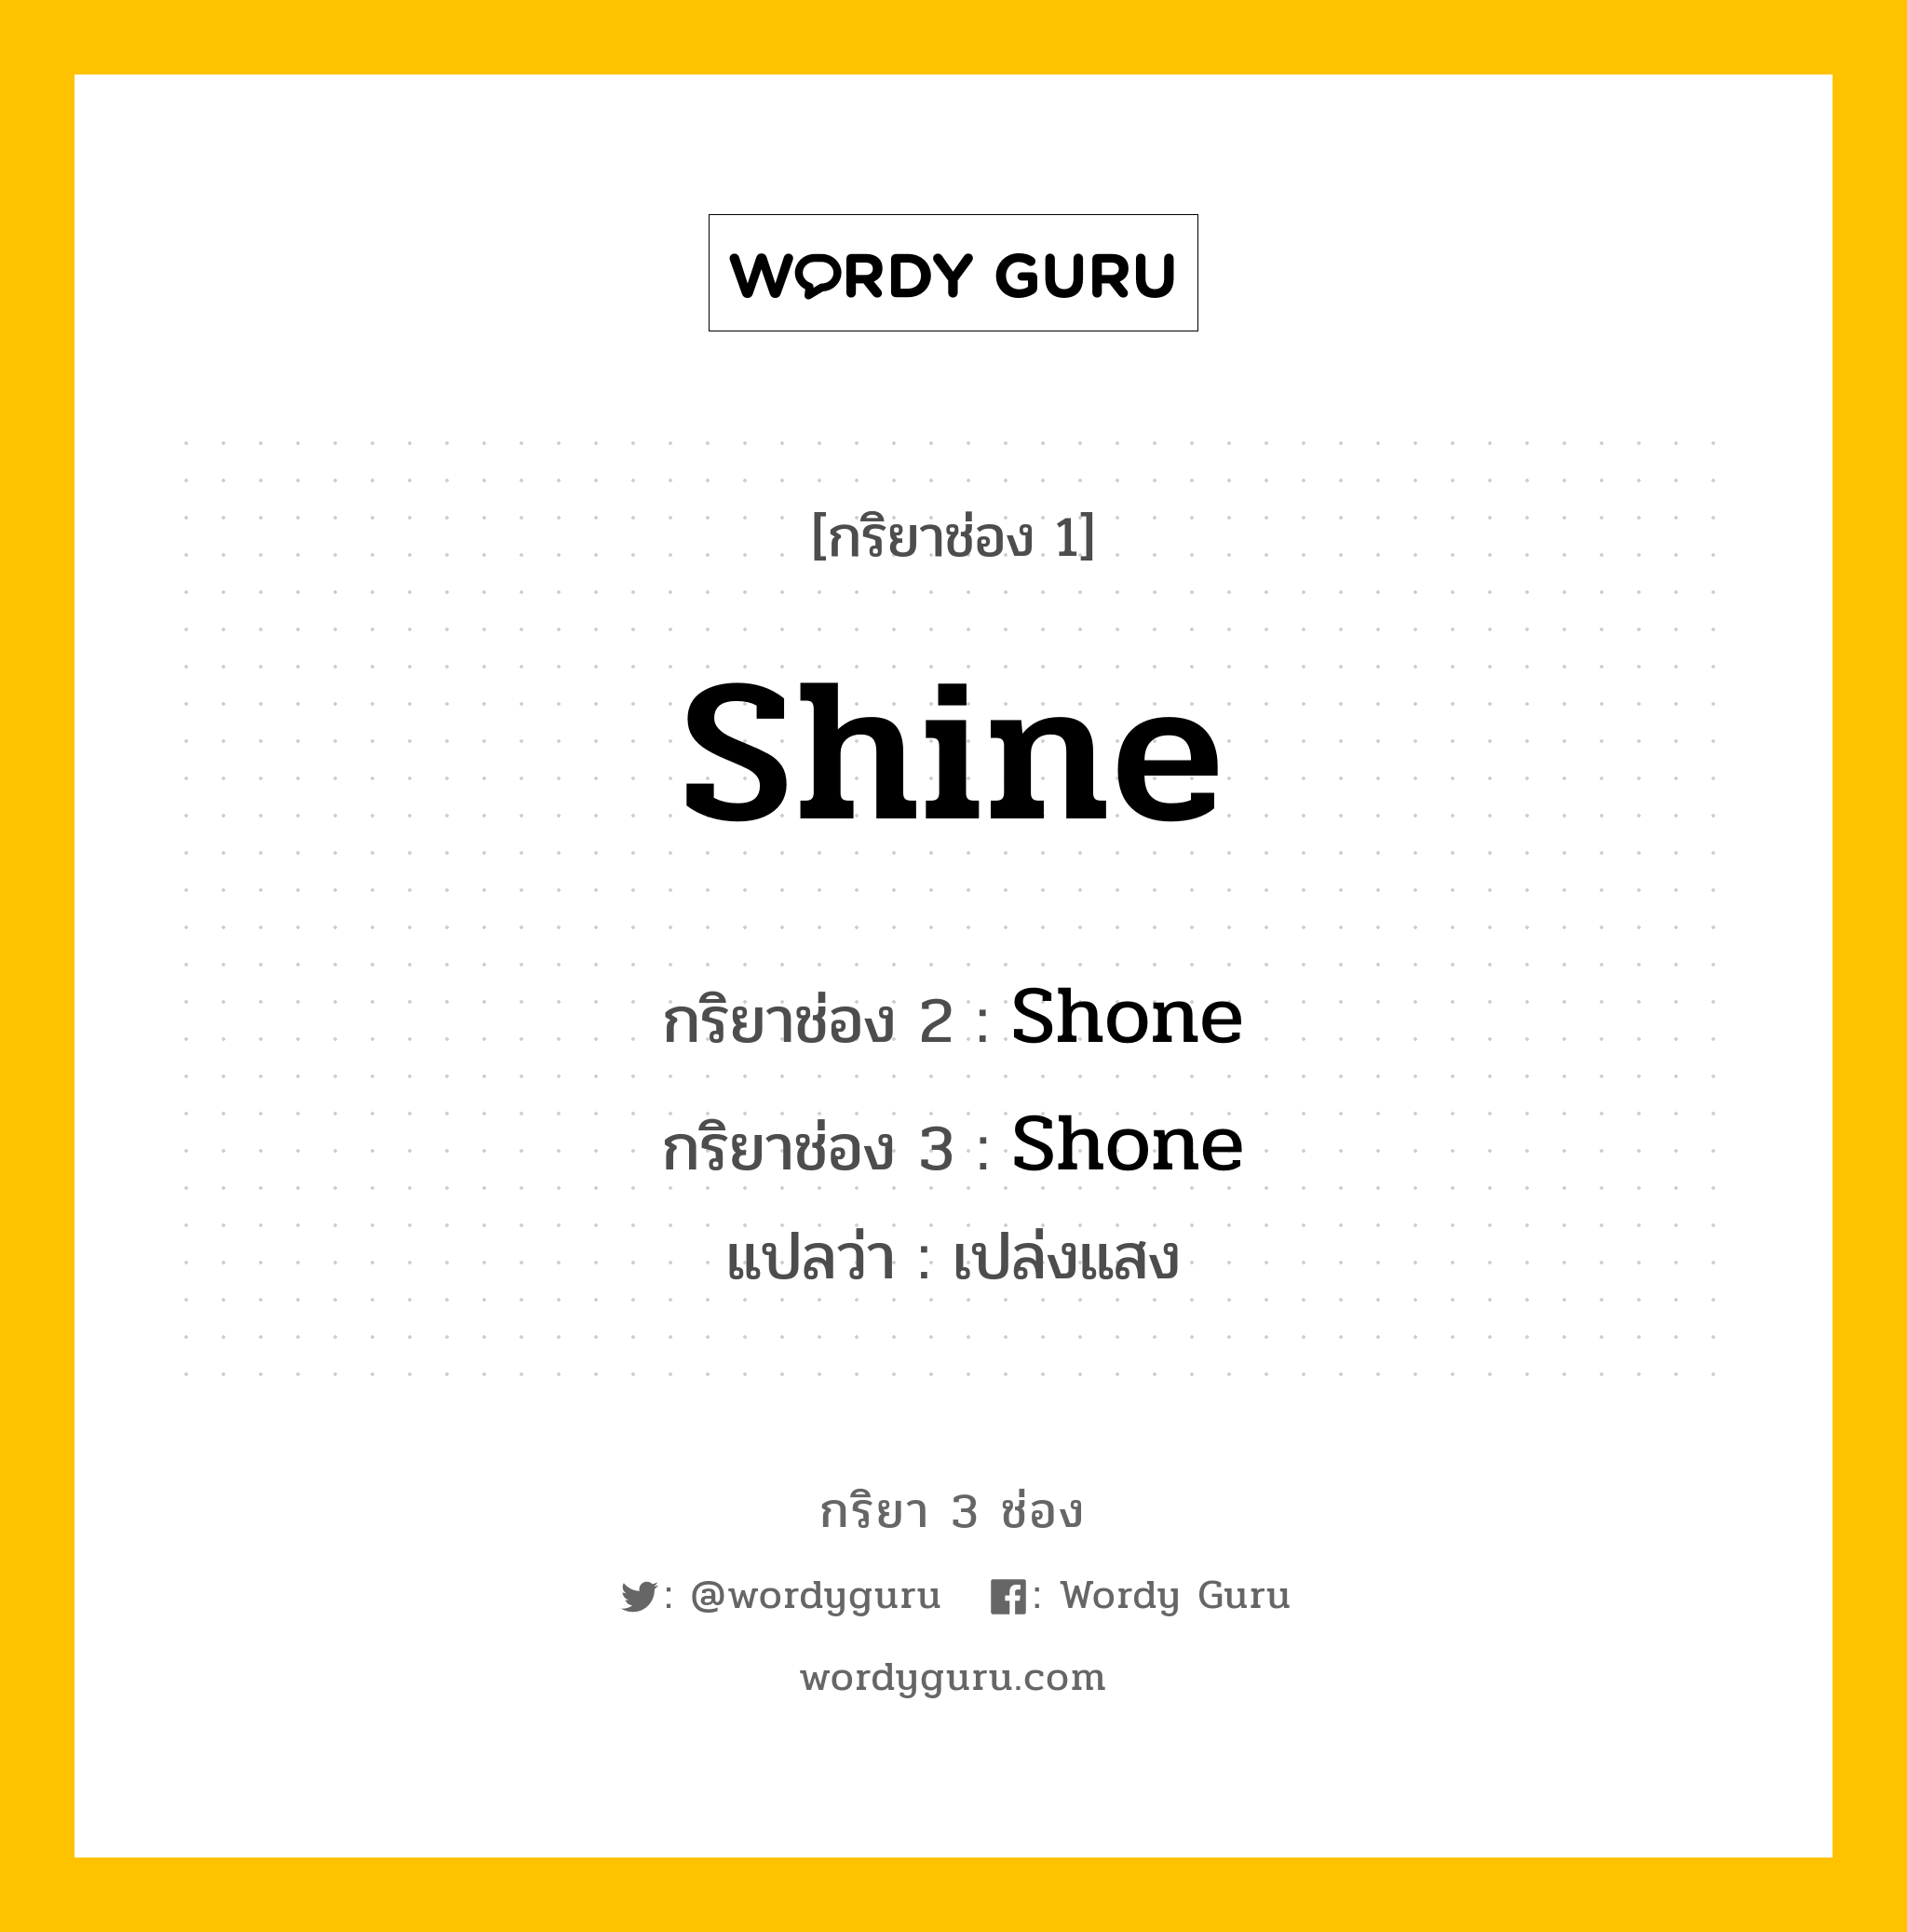 กริยา 3 ช่อง: Shine ช่อง 2 Shine ช่อง 3 คืออะไร, กริยาช่อง 1 Shine กริยาช่อง 2 Shone กริยาช่อง 3 Shone แปลว่า เปล่งแสง หมวด Irregular Verb